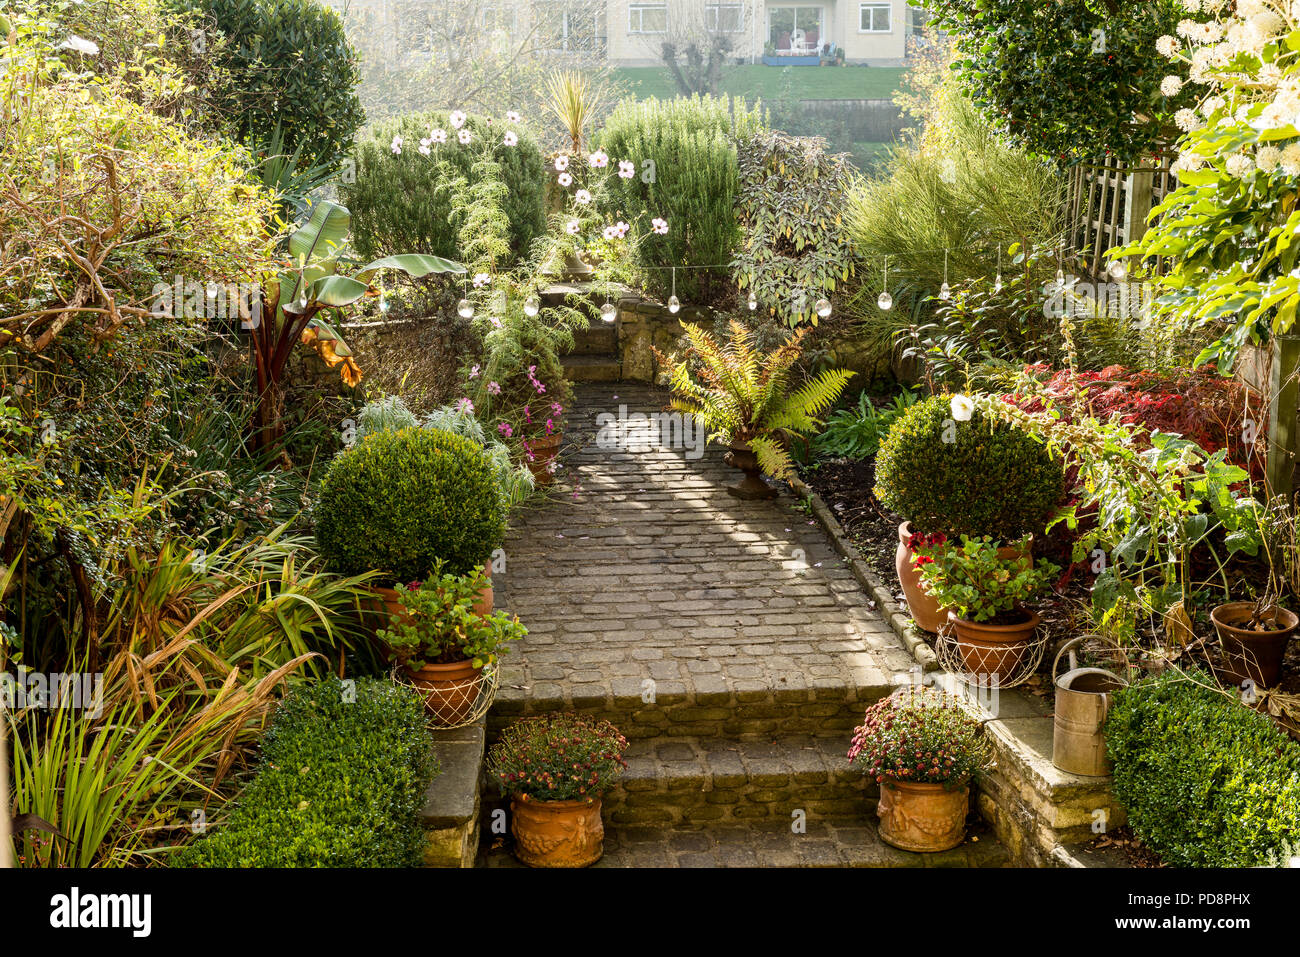 Hardy hierbas, helechos y caja hedge en jardín con allanar adoquines piedras Foto de stock